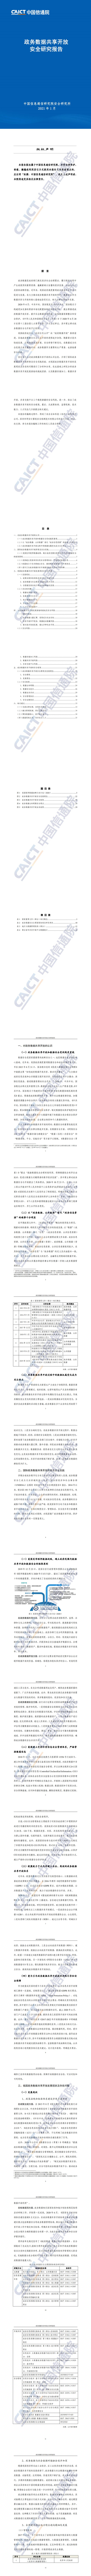 【中国信通院】政务数据共享开放安全研究报告_0.jpg